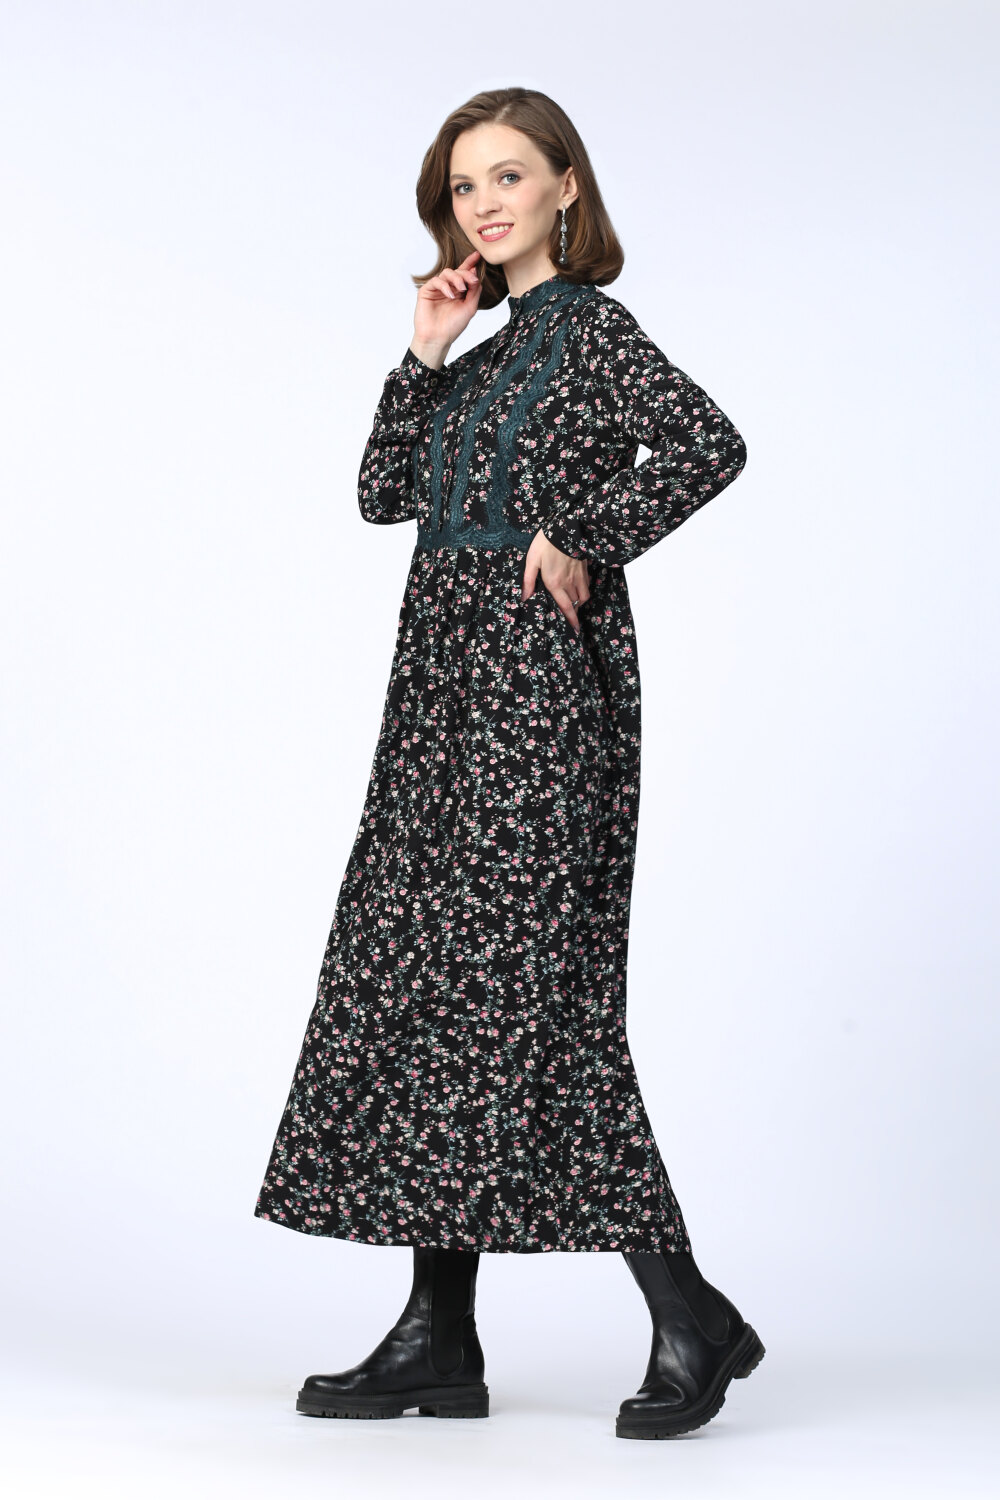 Платье женское "Катерина" модель 633/1 розочки на чёрном